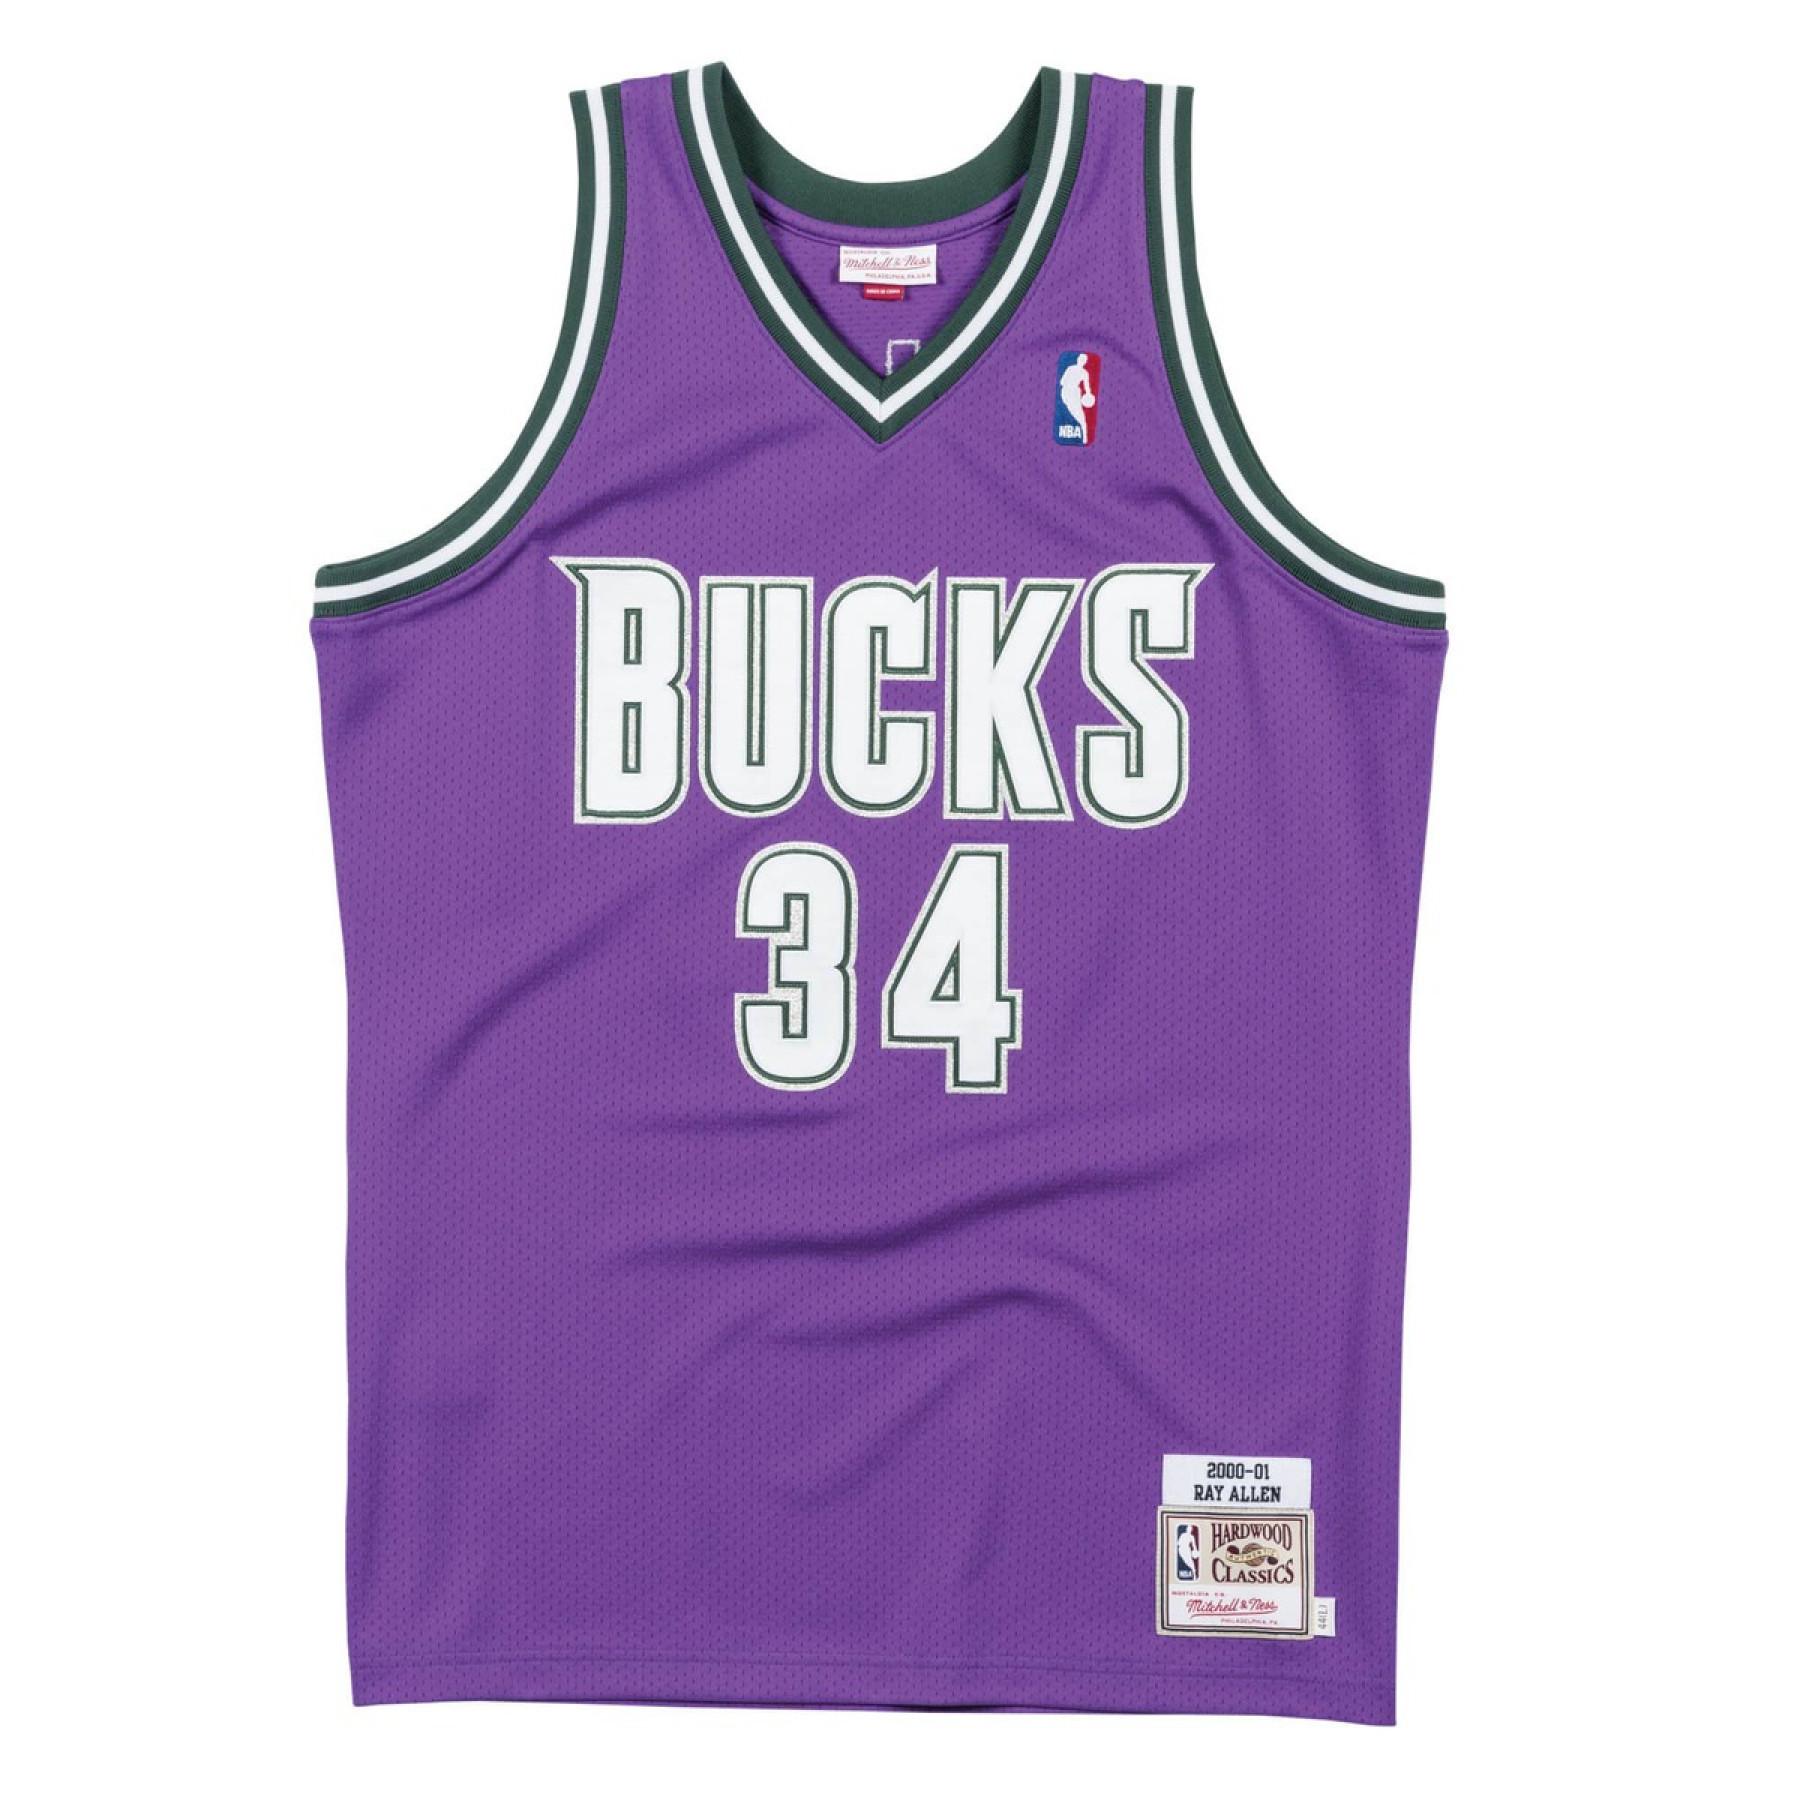 Autentyczna koszulka Milwaukee Bucks Ray Allen 2000/01